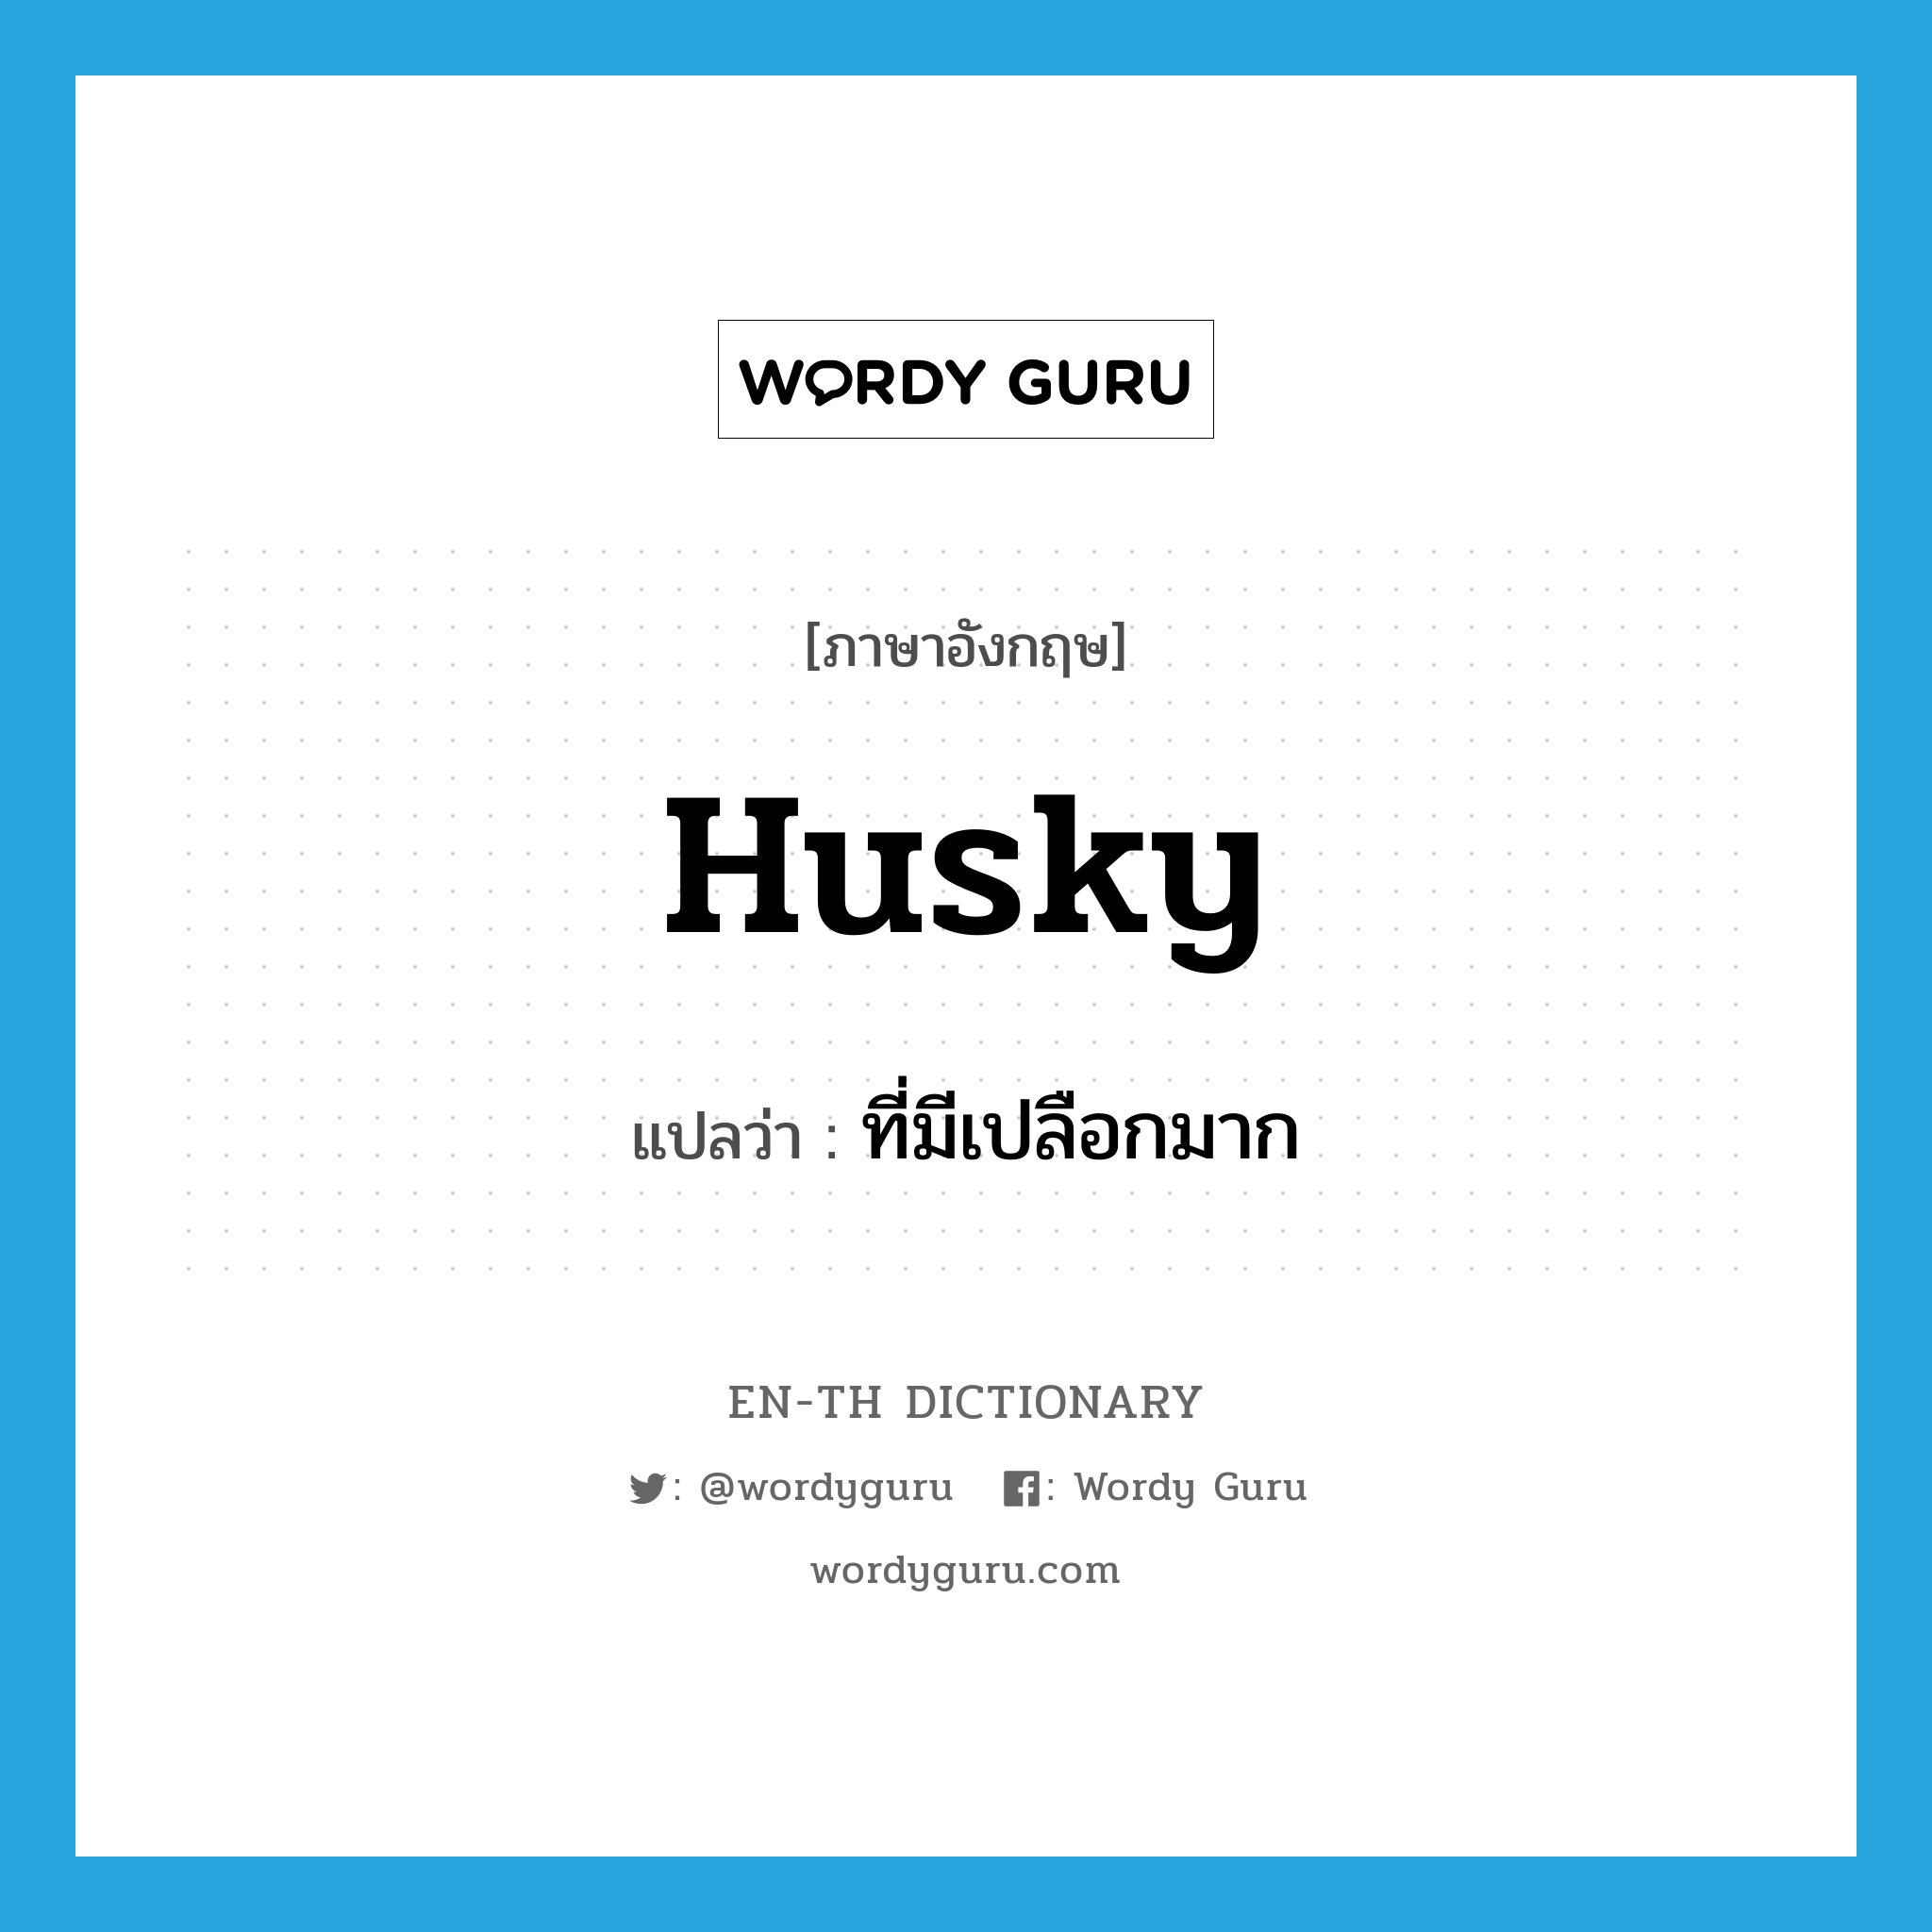 husky แปลว่า?, คำศัพท์ภาษาอังกฤษ husky แปลว่า ที่มีเปลือกมาก ประเภท ADJ หมวด ADJ